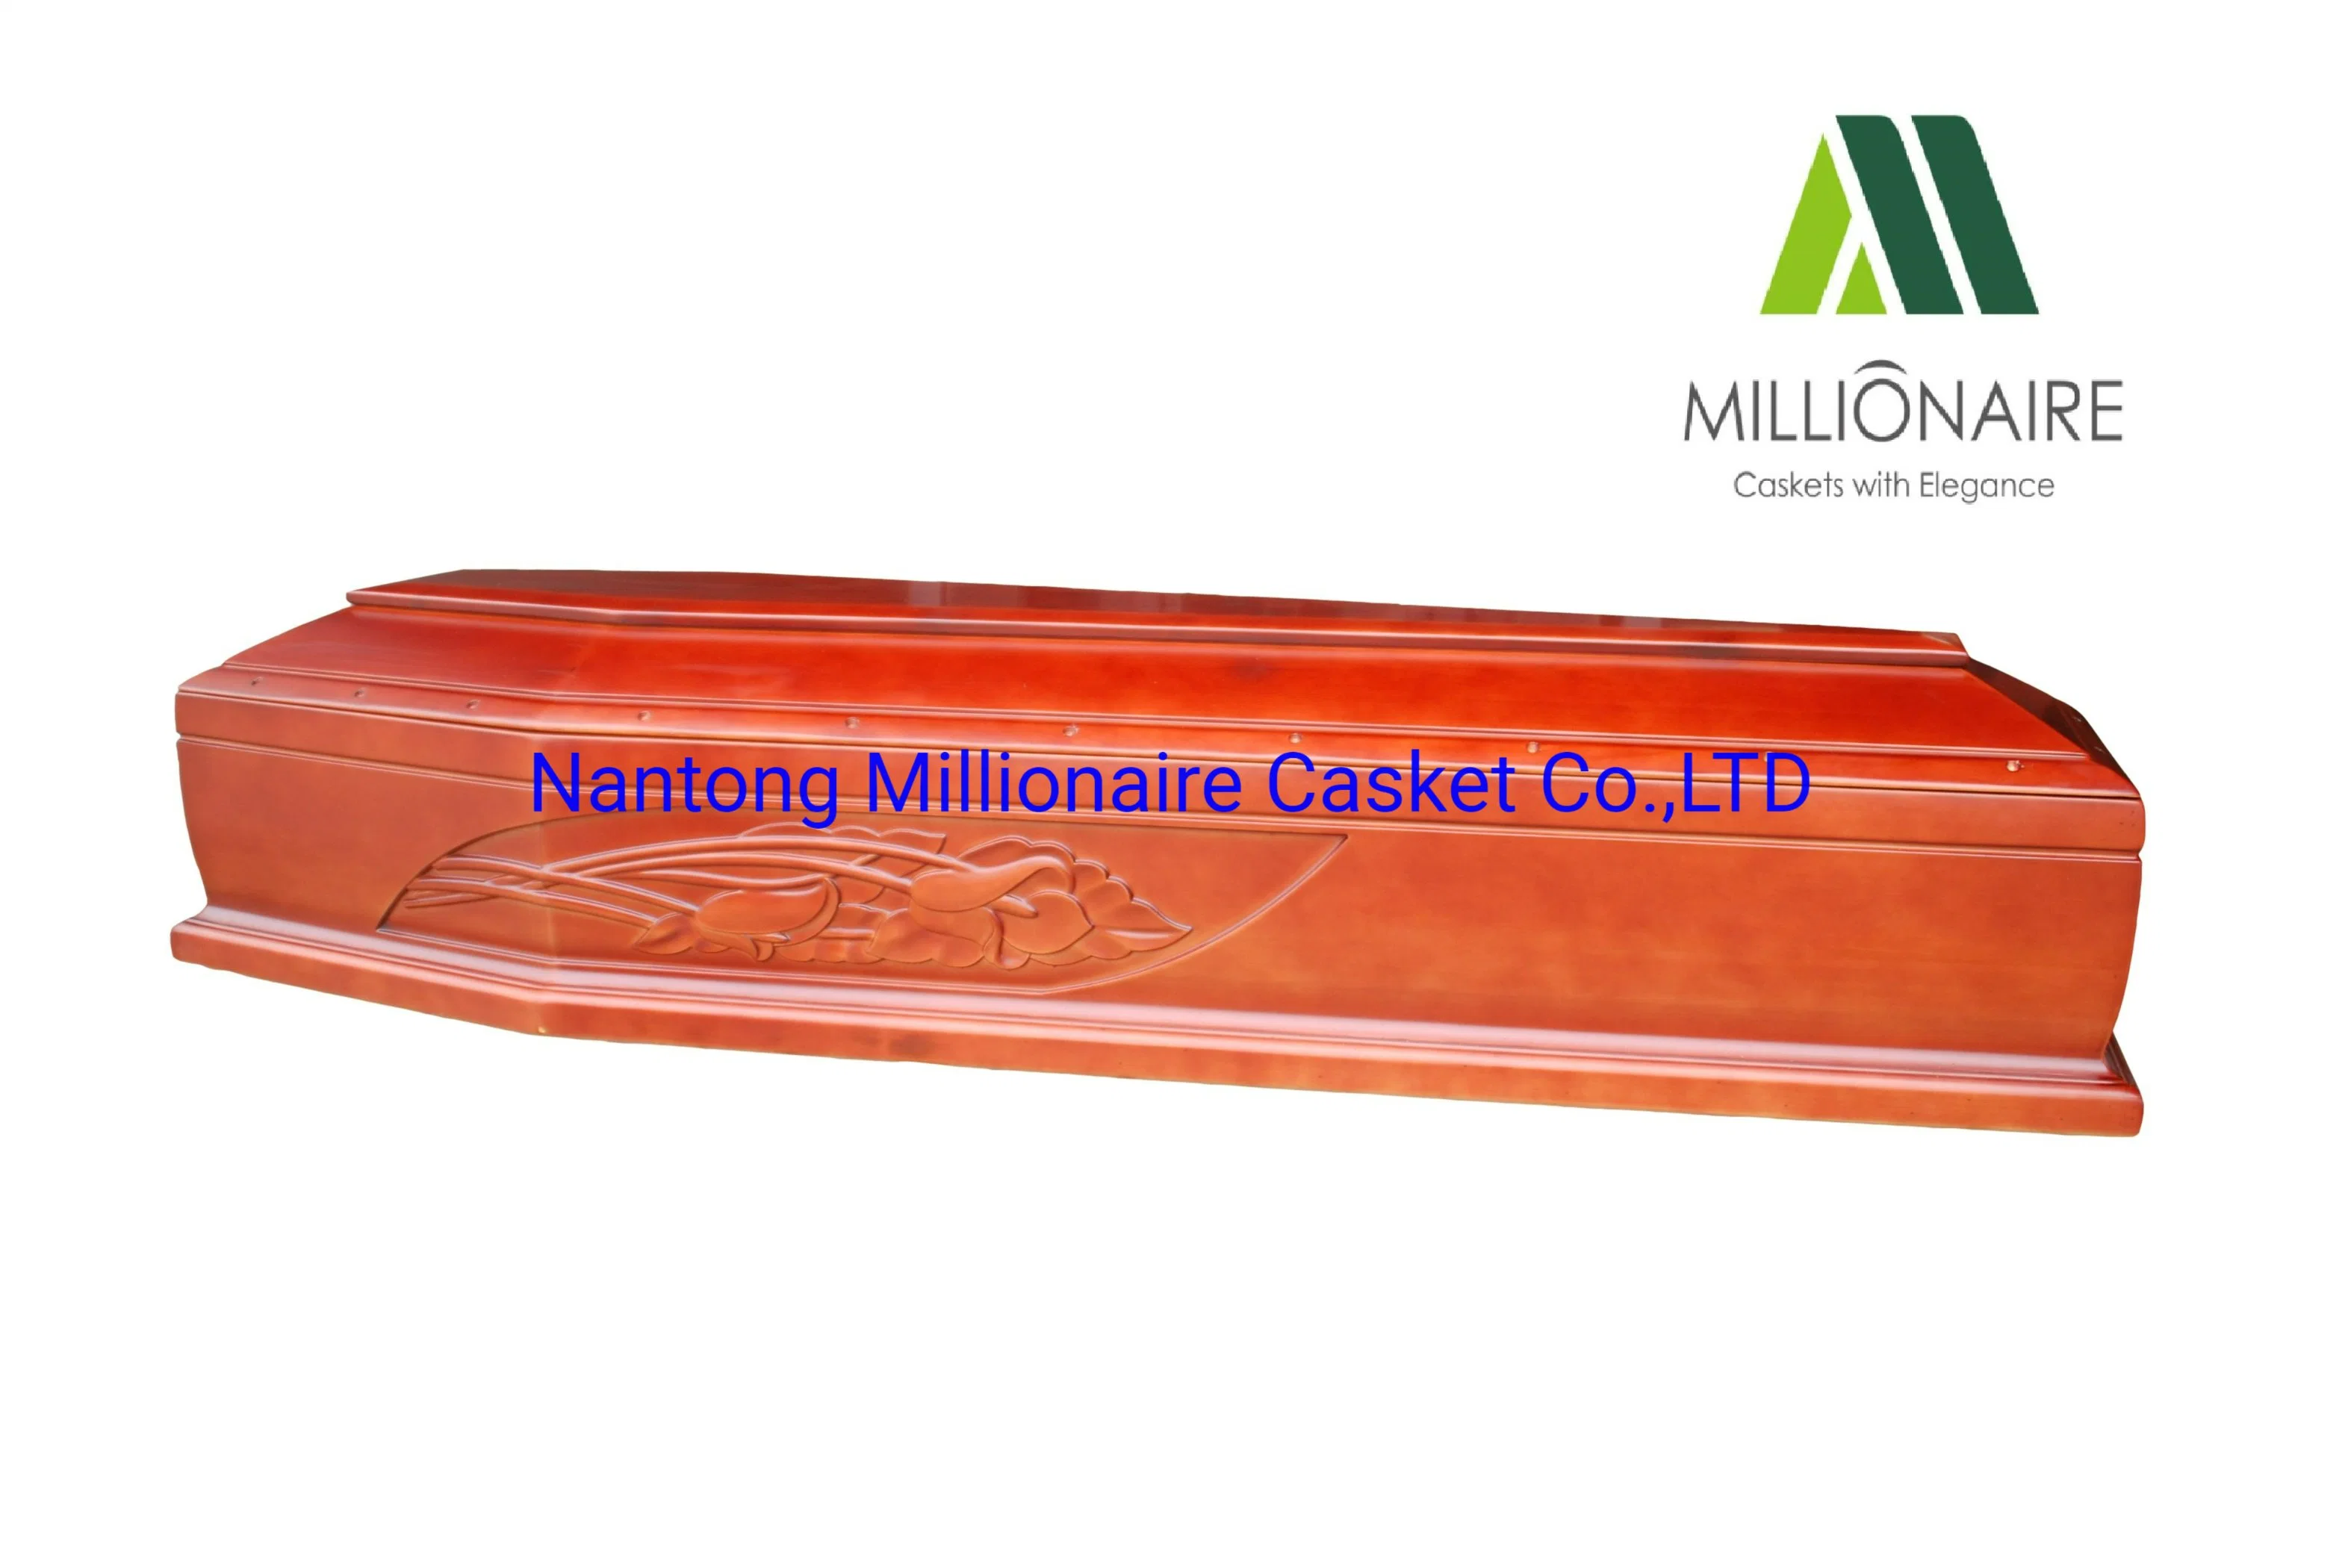 Paulownia Wood Coffins de Millionaire Casket Company para Europa y. Mercado del Caribe